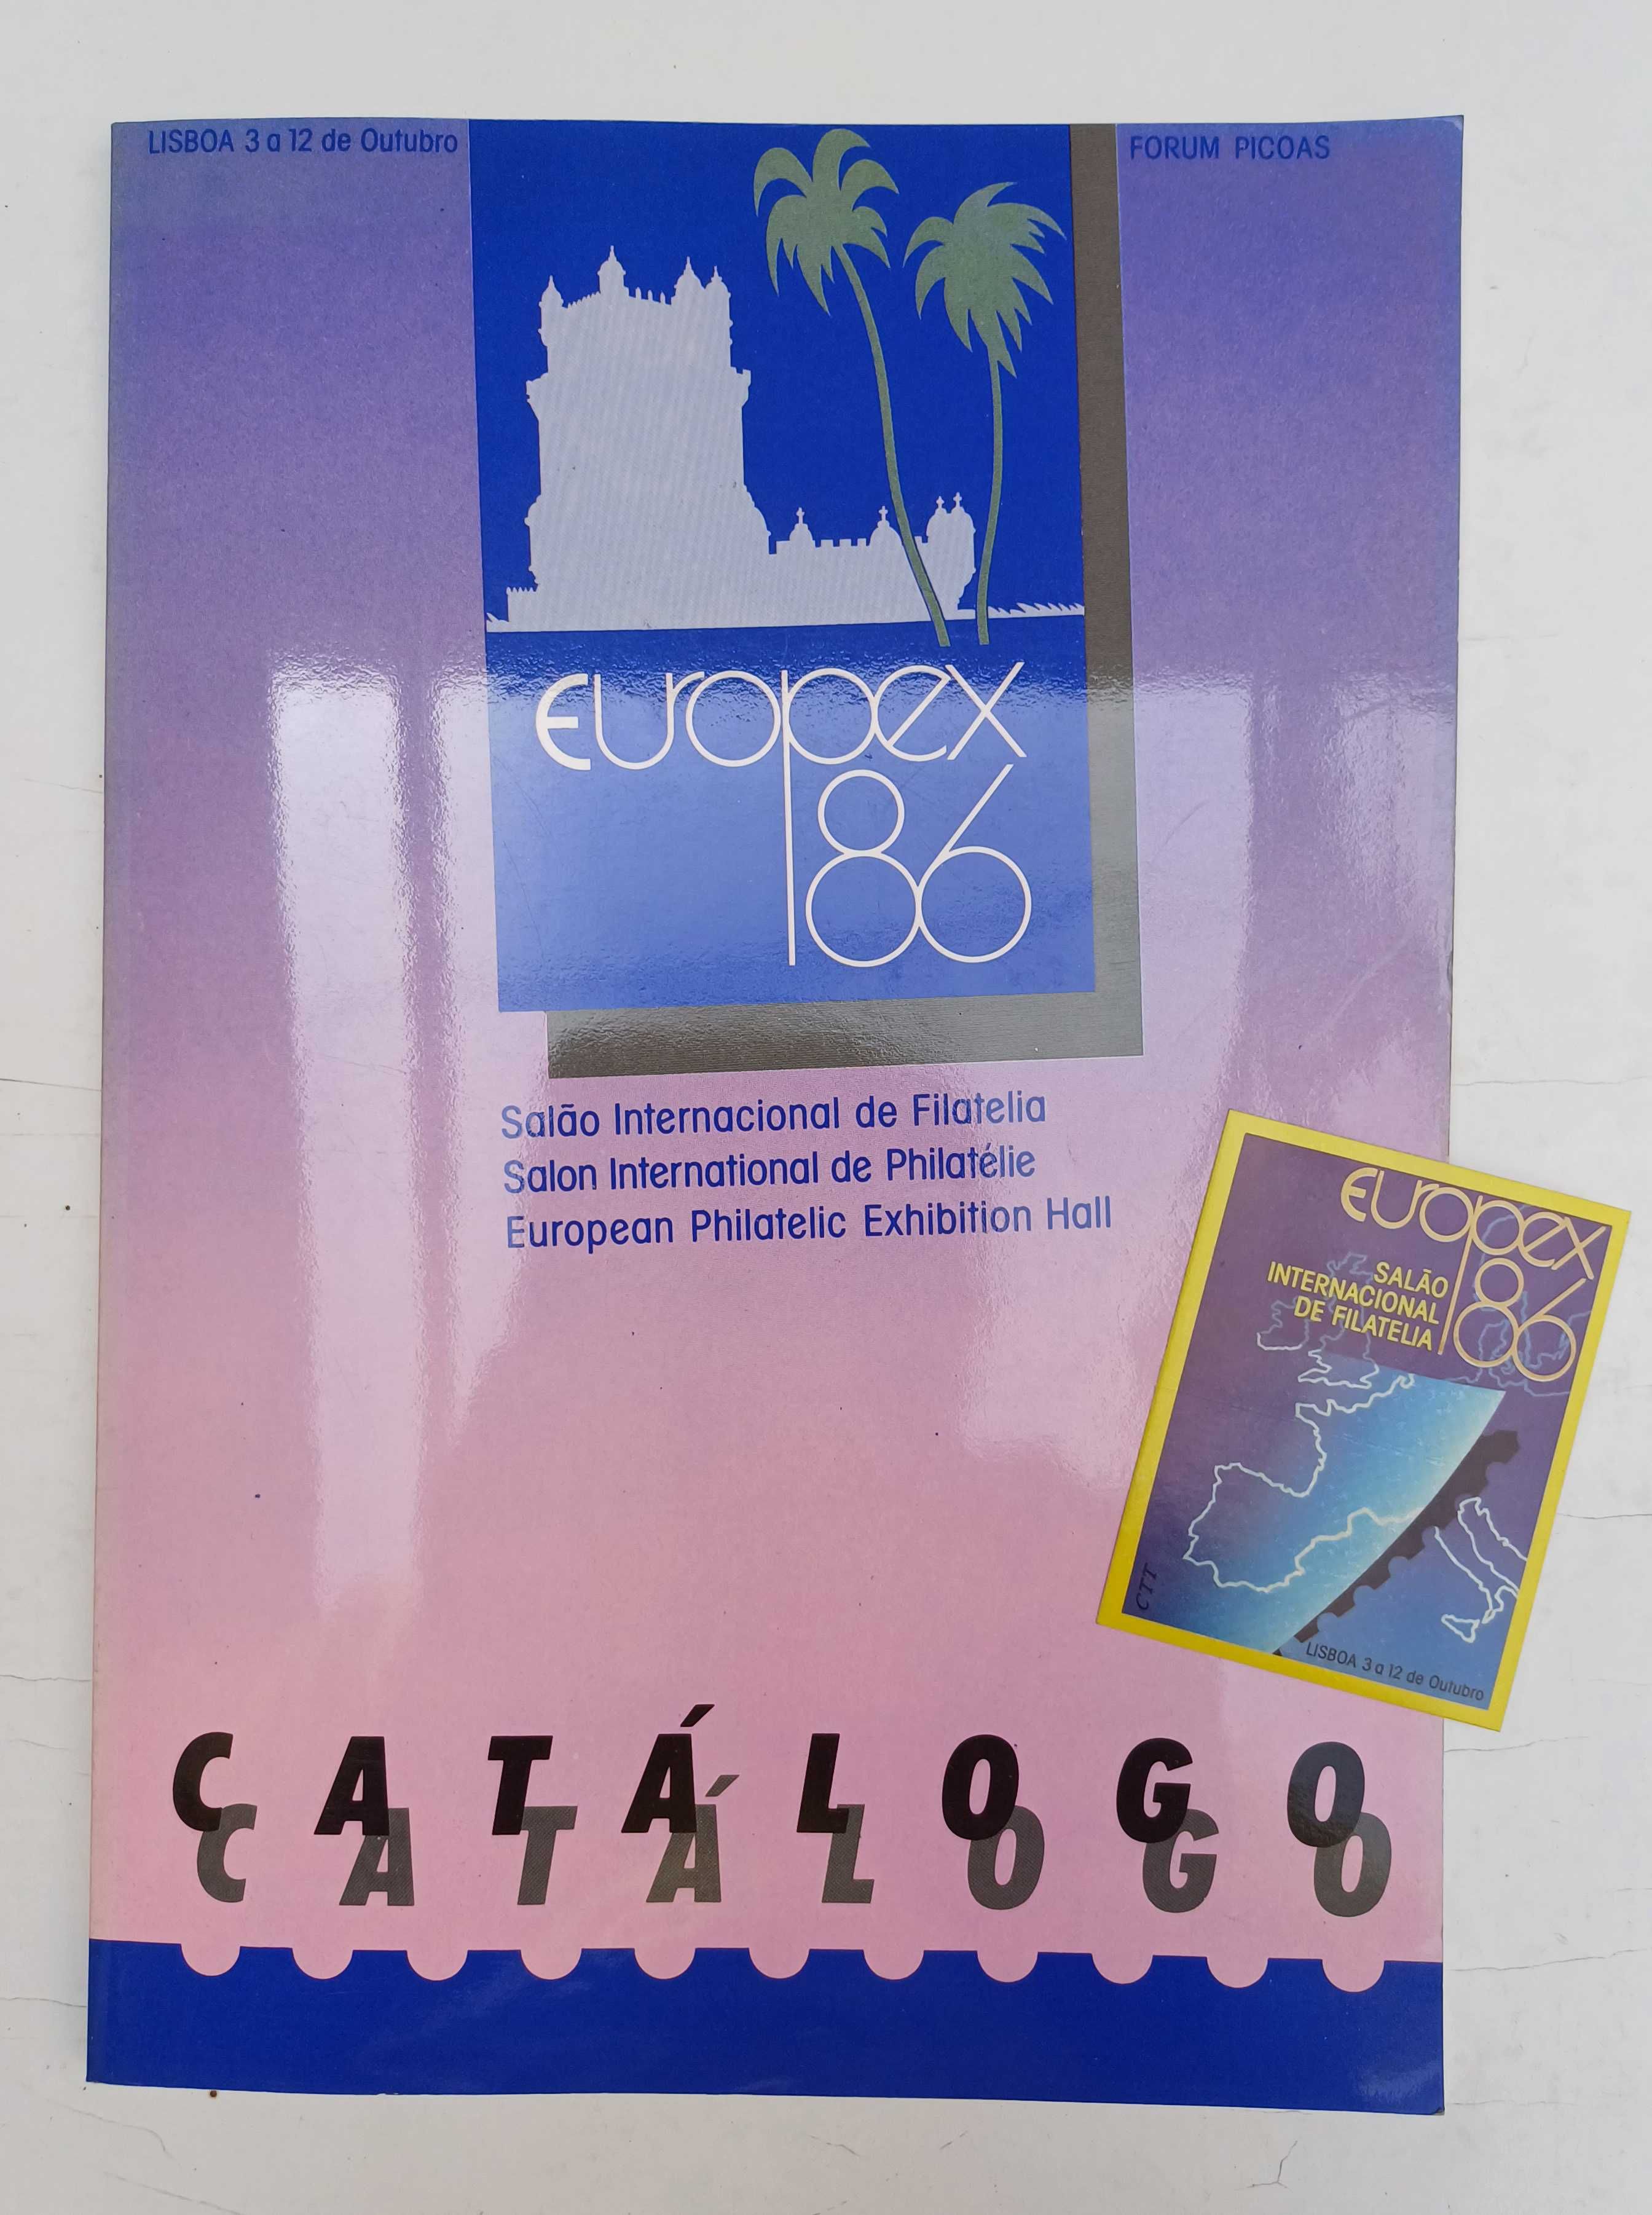 Catálogo e autocolante da Exposição filatélica Europex 86